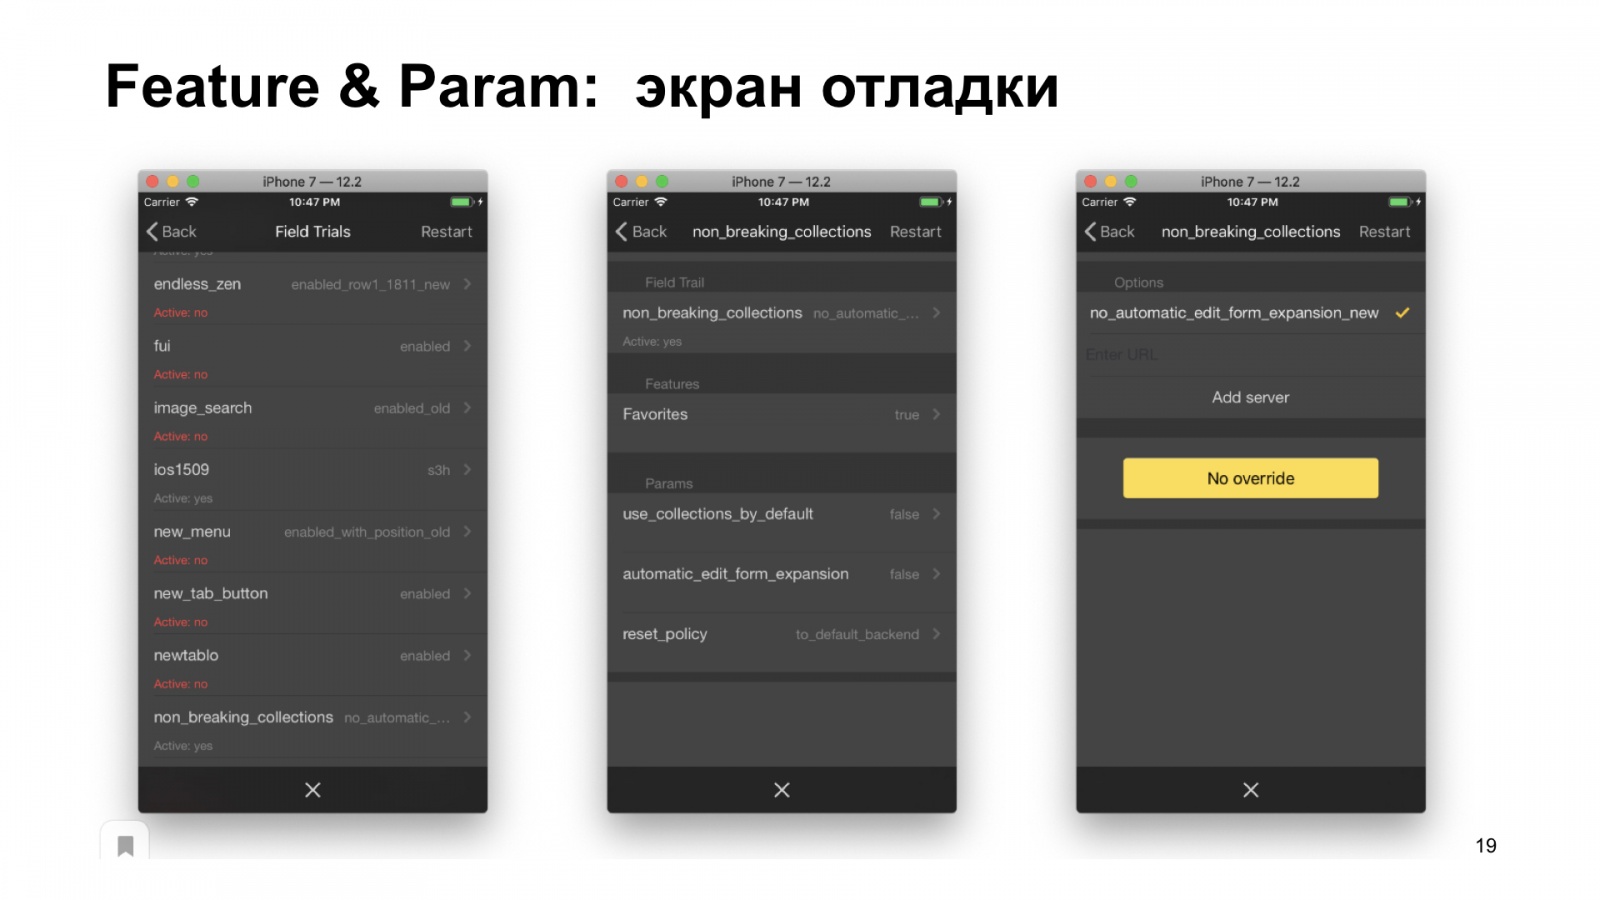 Как Браузер для iOS А-Б-тестирование улучшал. Доклад Яндекса - 20